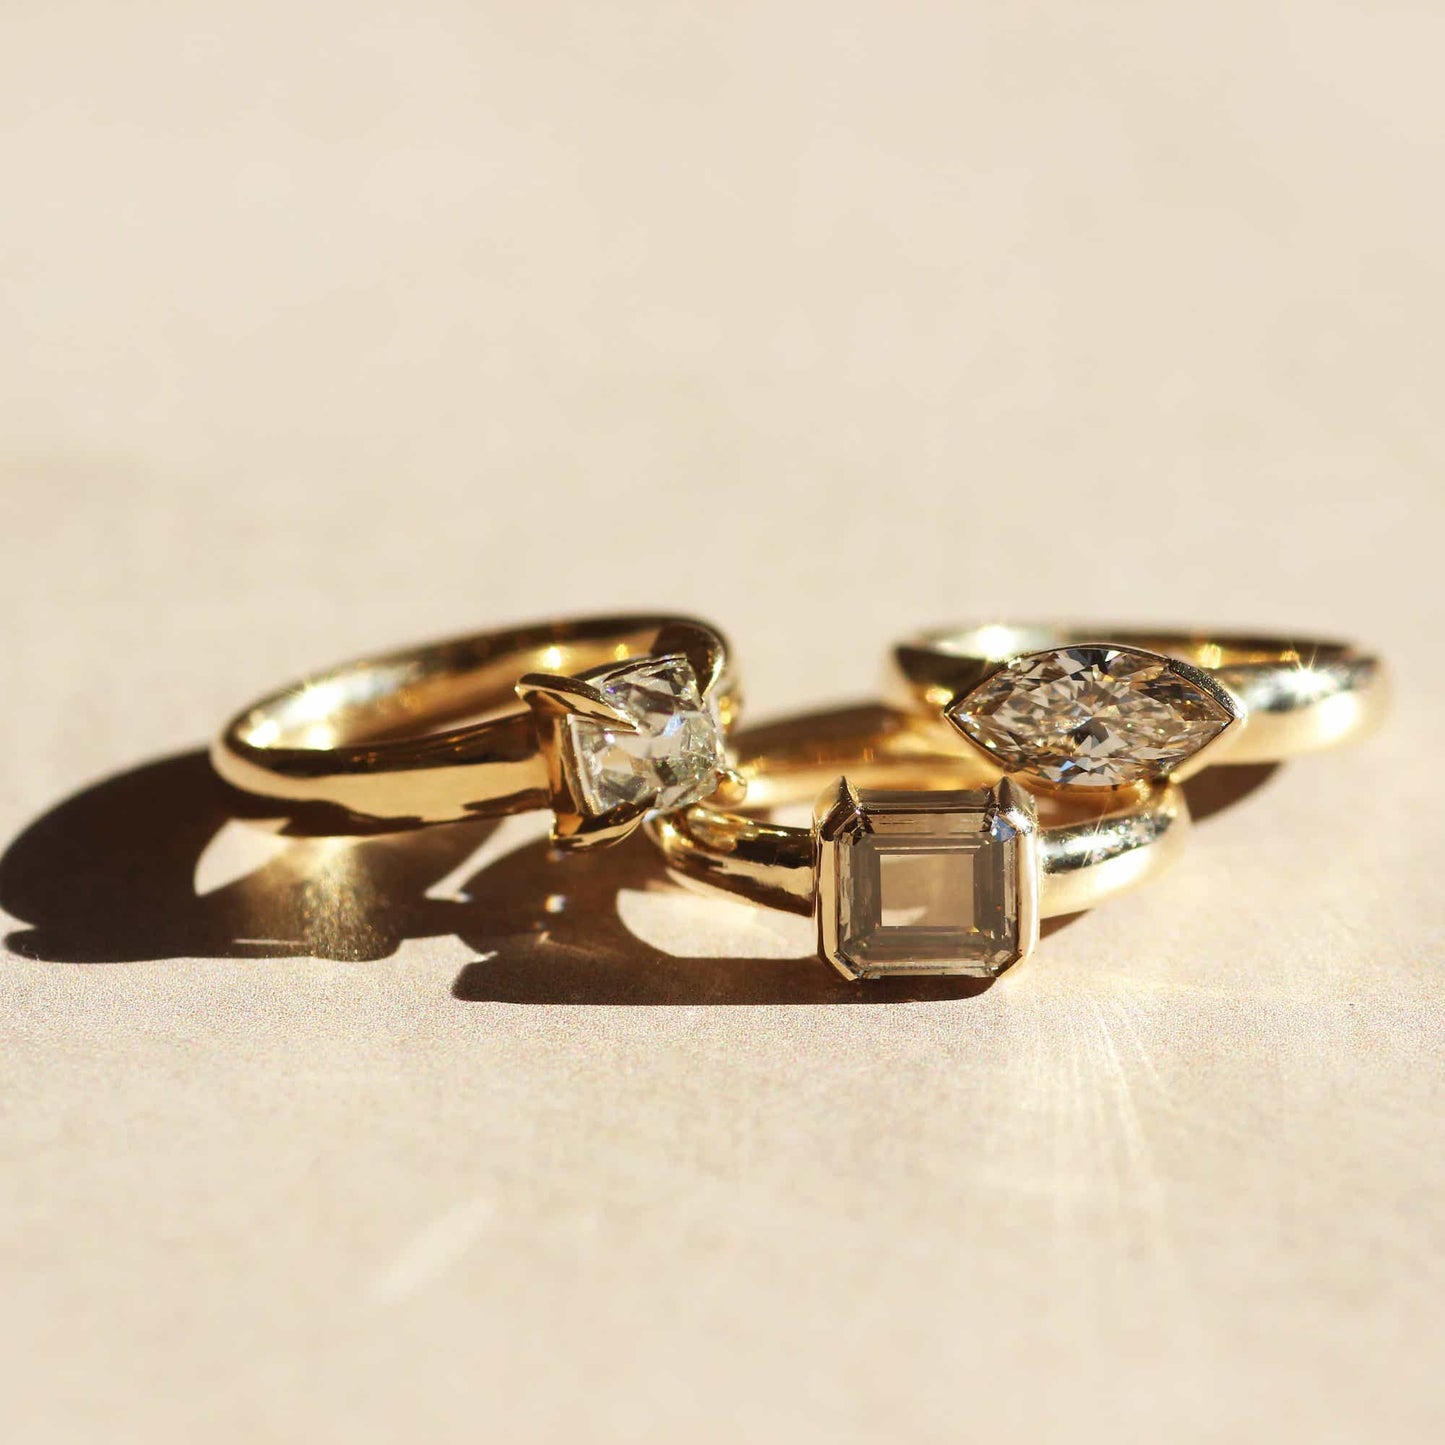 Ellipse Ring / Old Mine Cut Diamond